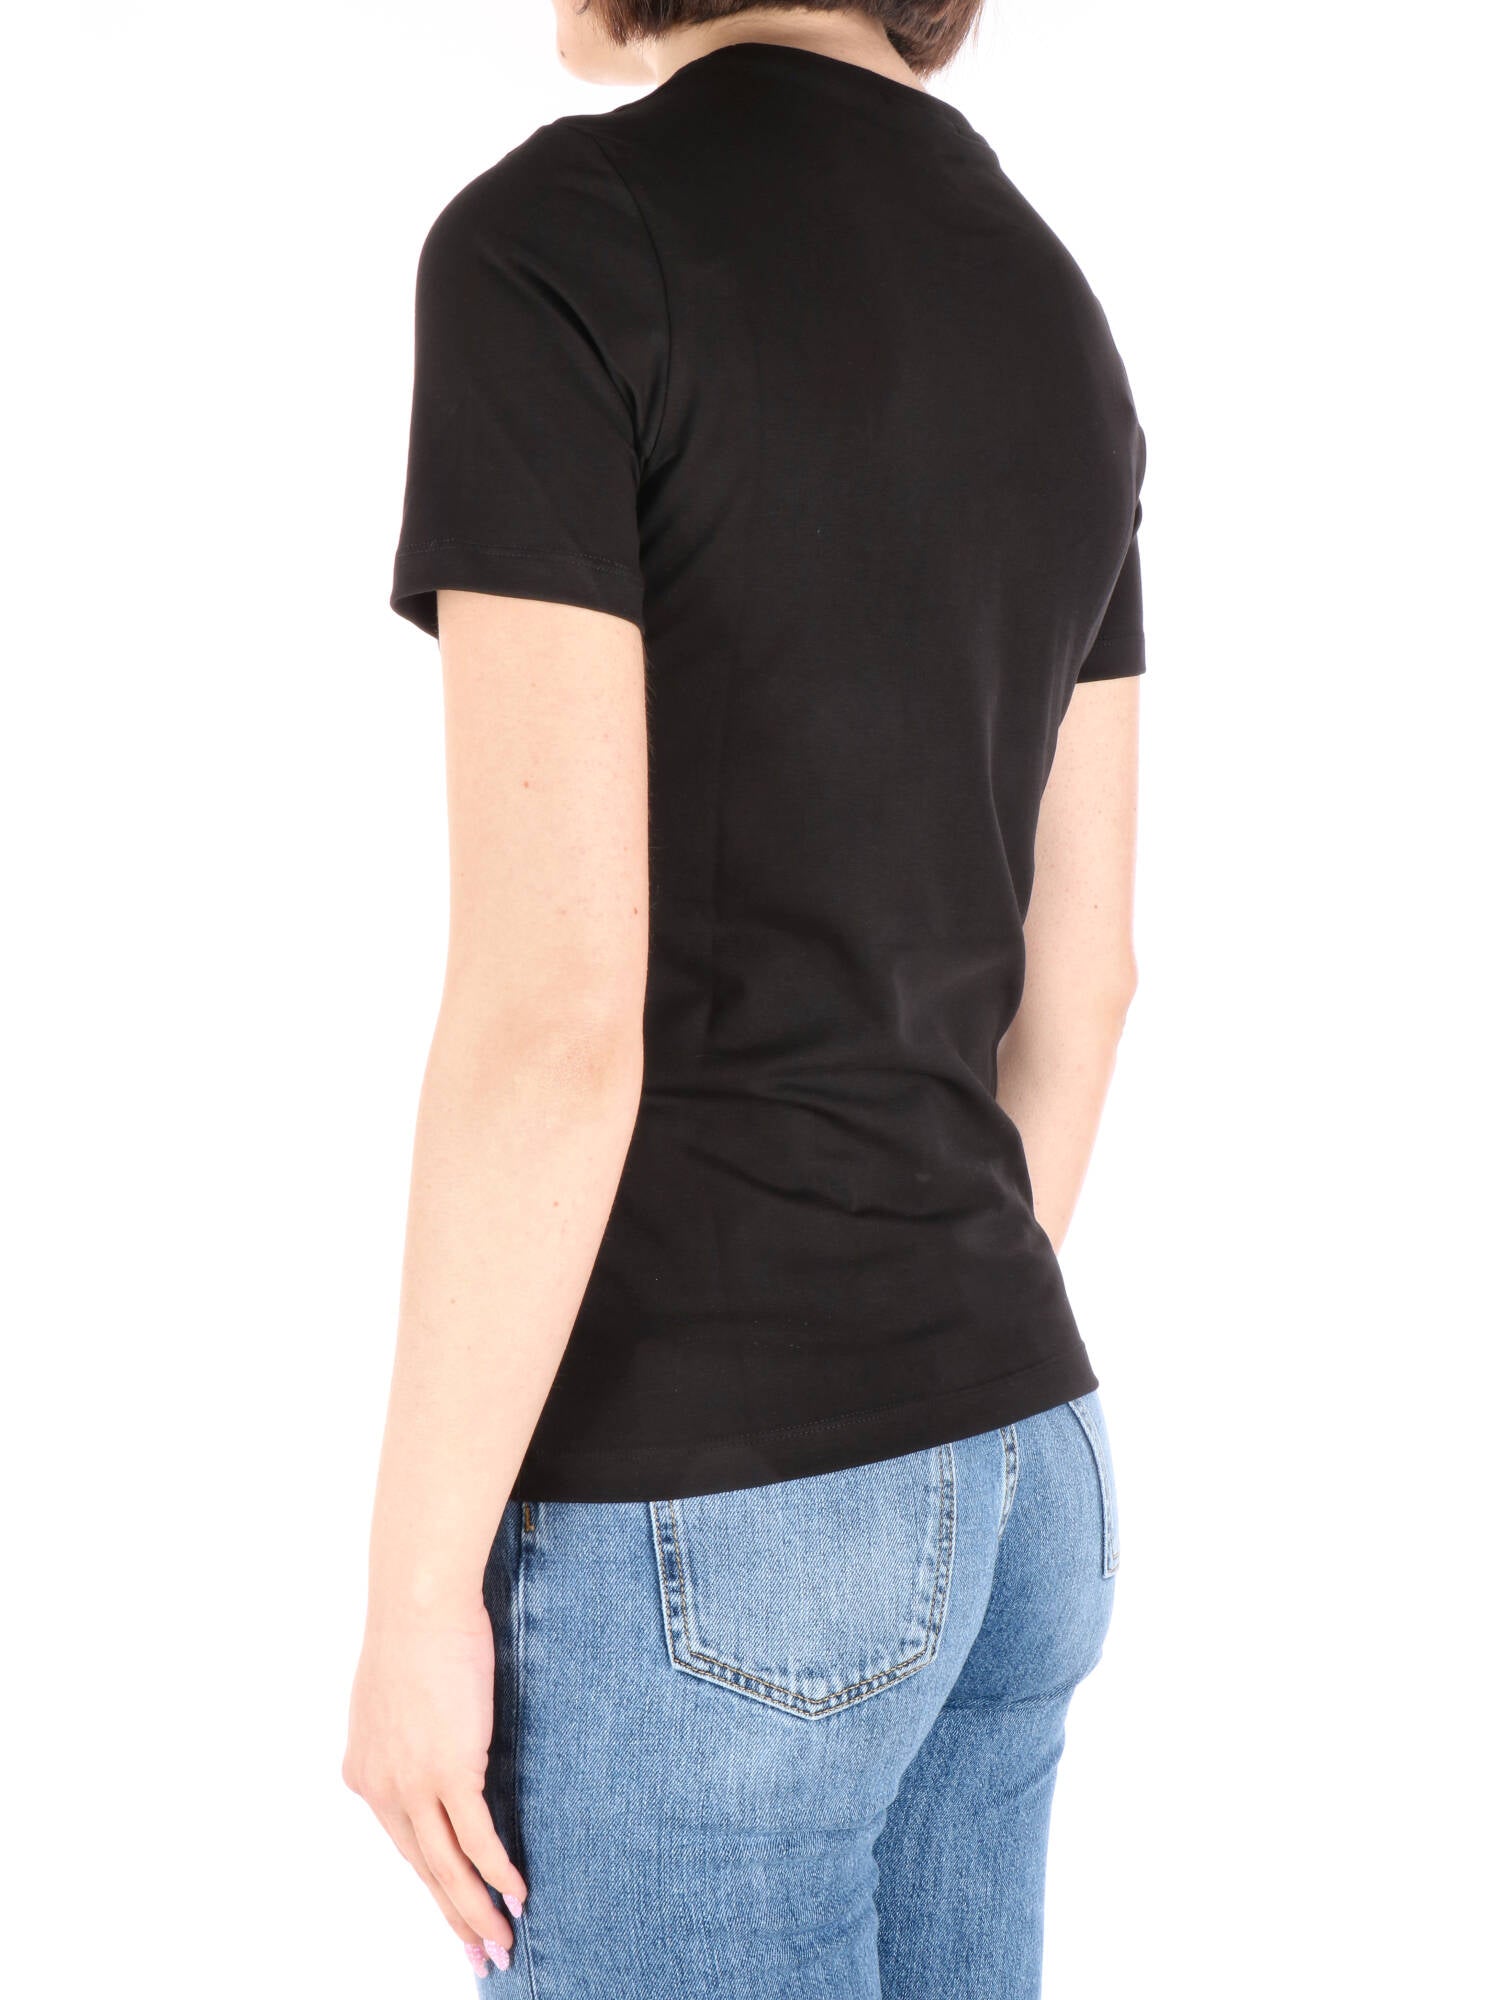 Gaelle Paris t-shirt nera con stampa